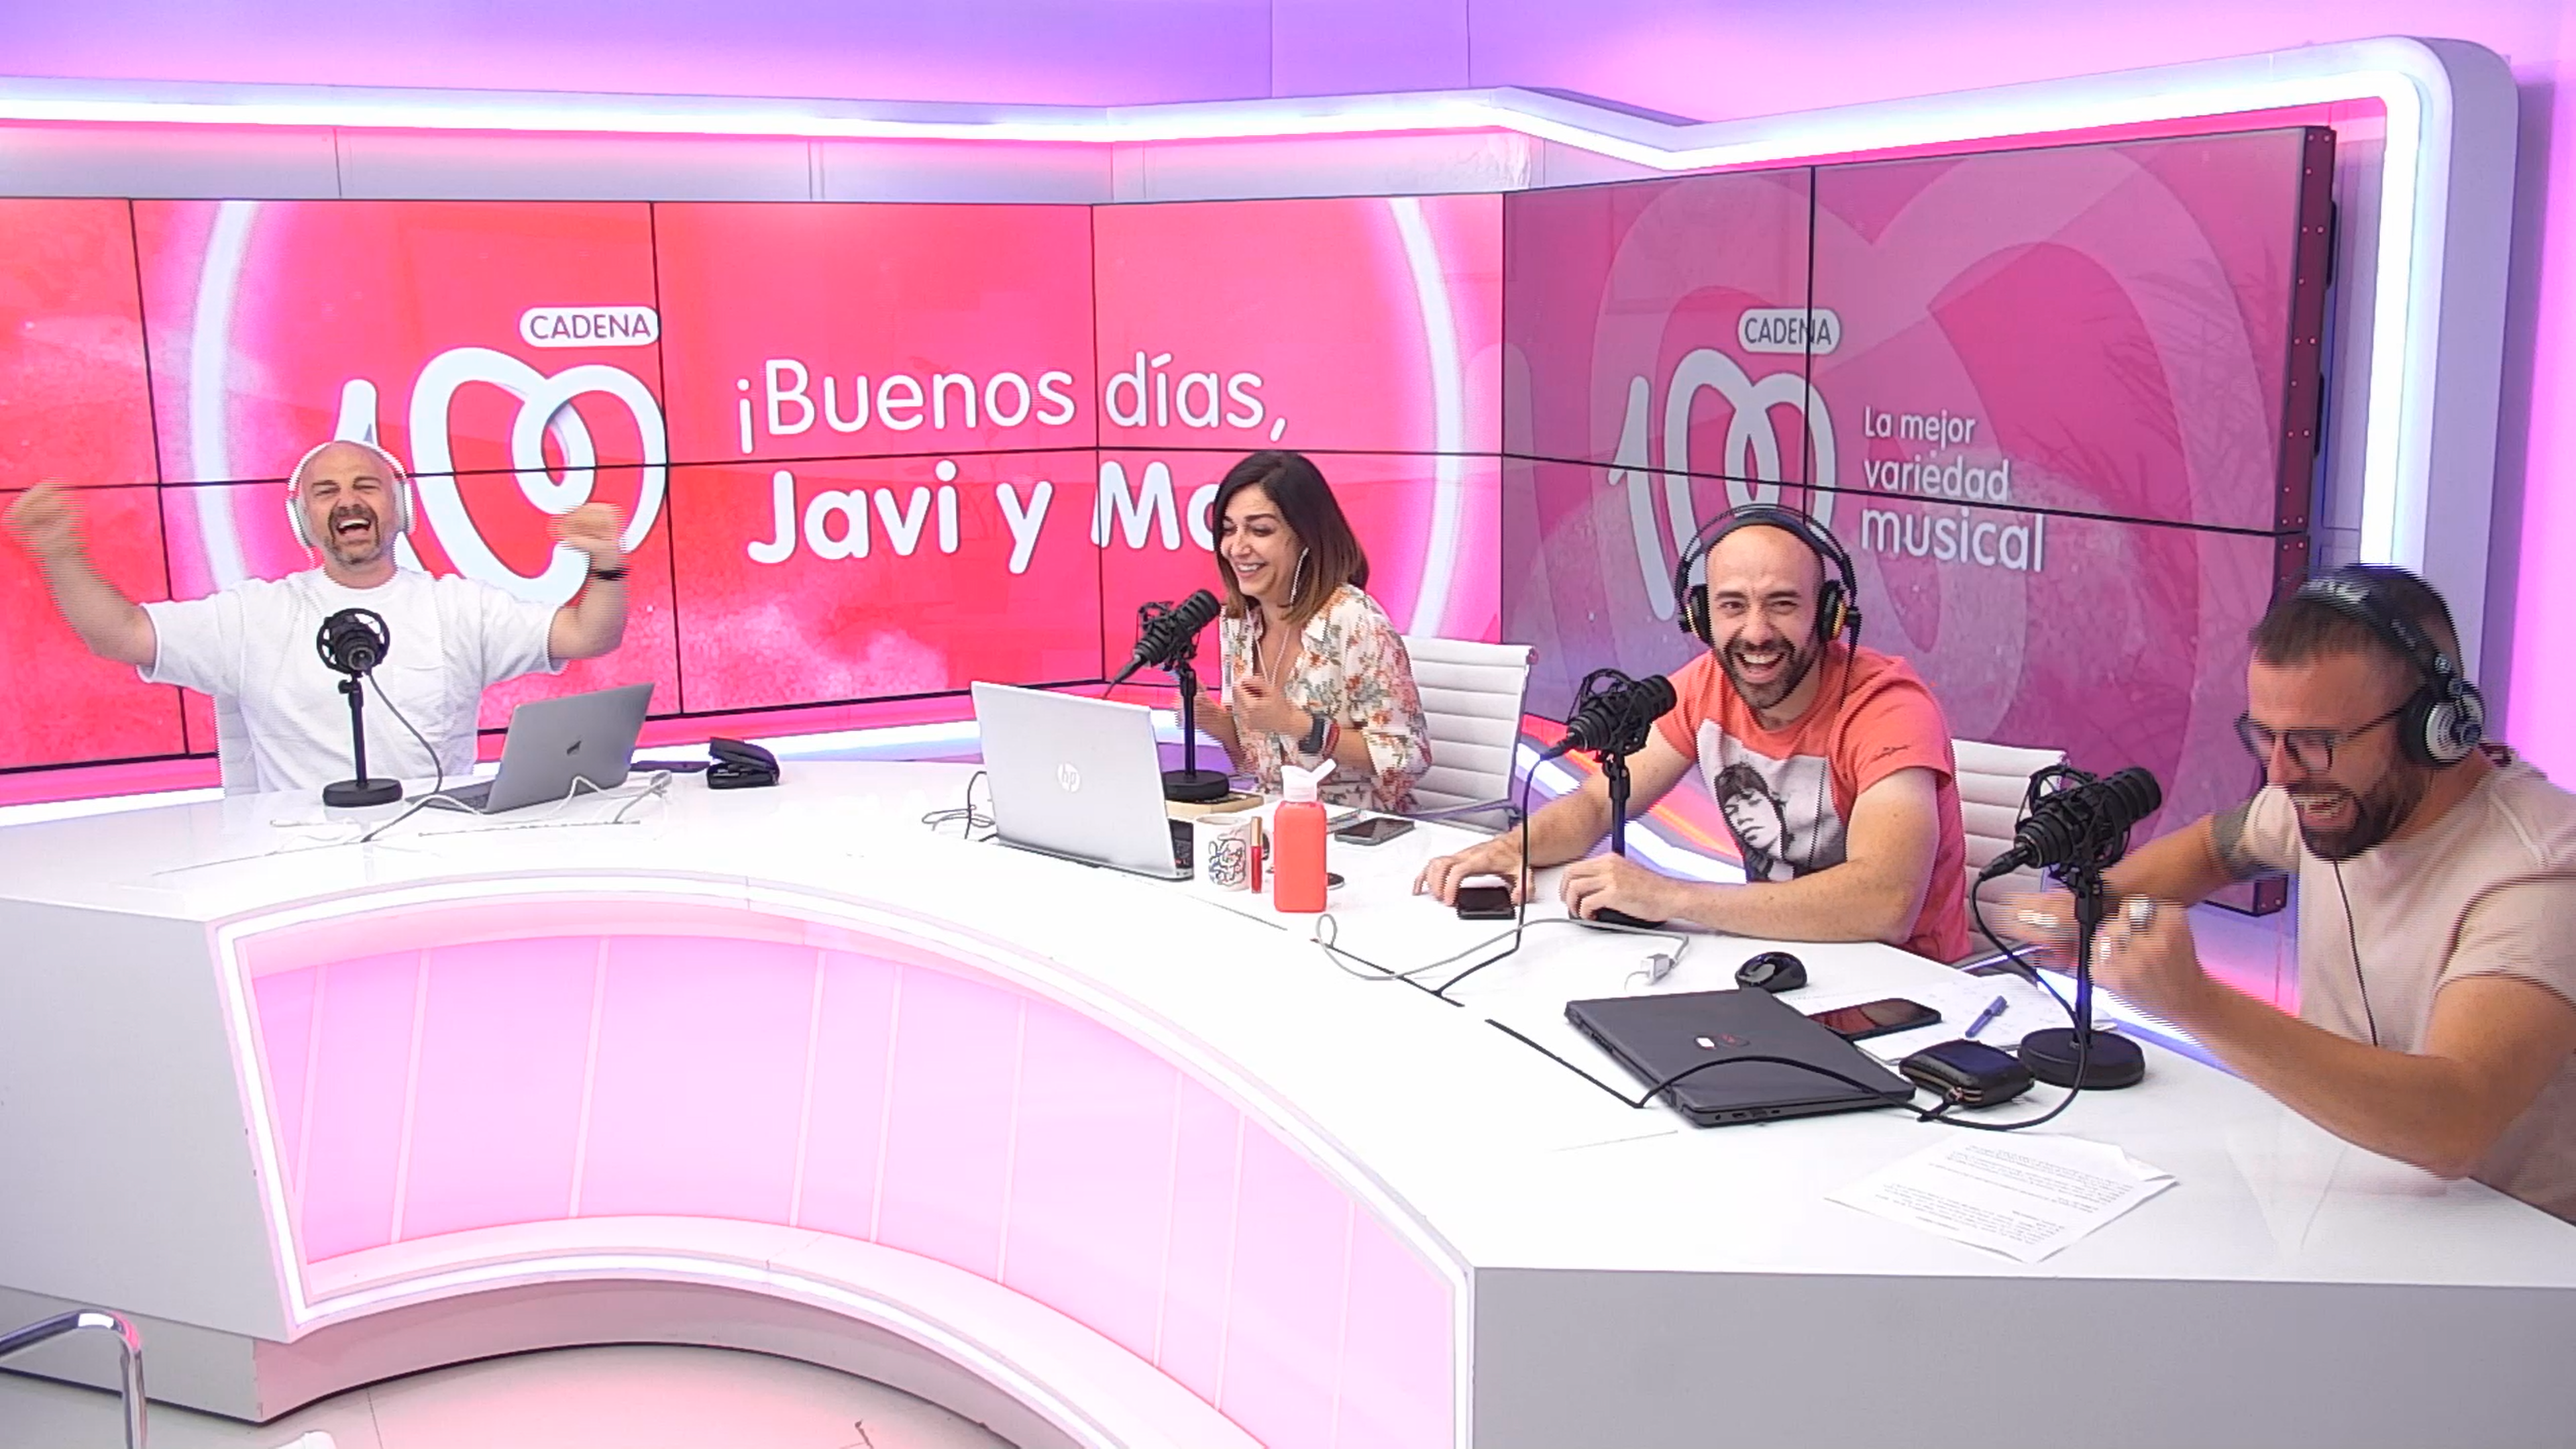 Javi y Mar crean la playlist para la boda de José Real: "Tienen que sonar sí o sí"